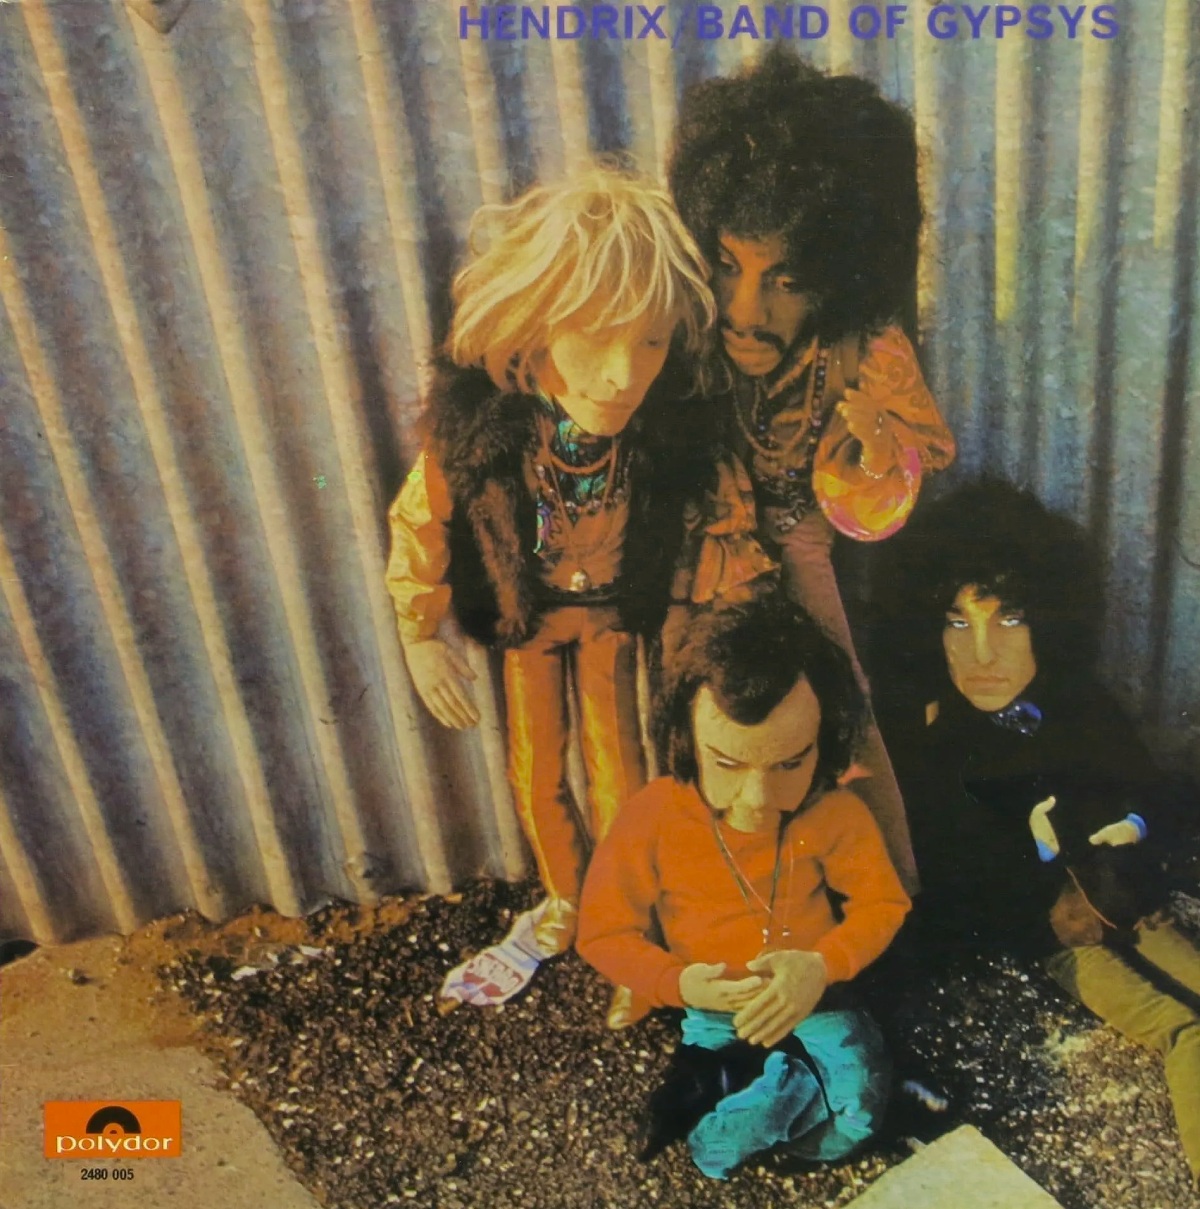 Versión alternativa de la portada del álbum Band of Gypsys de Jimi Hendrix